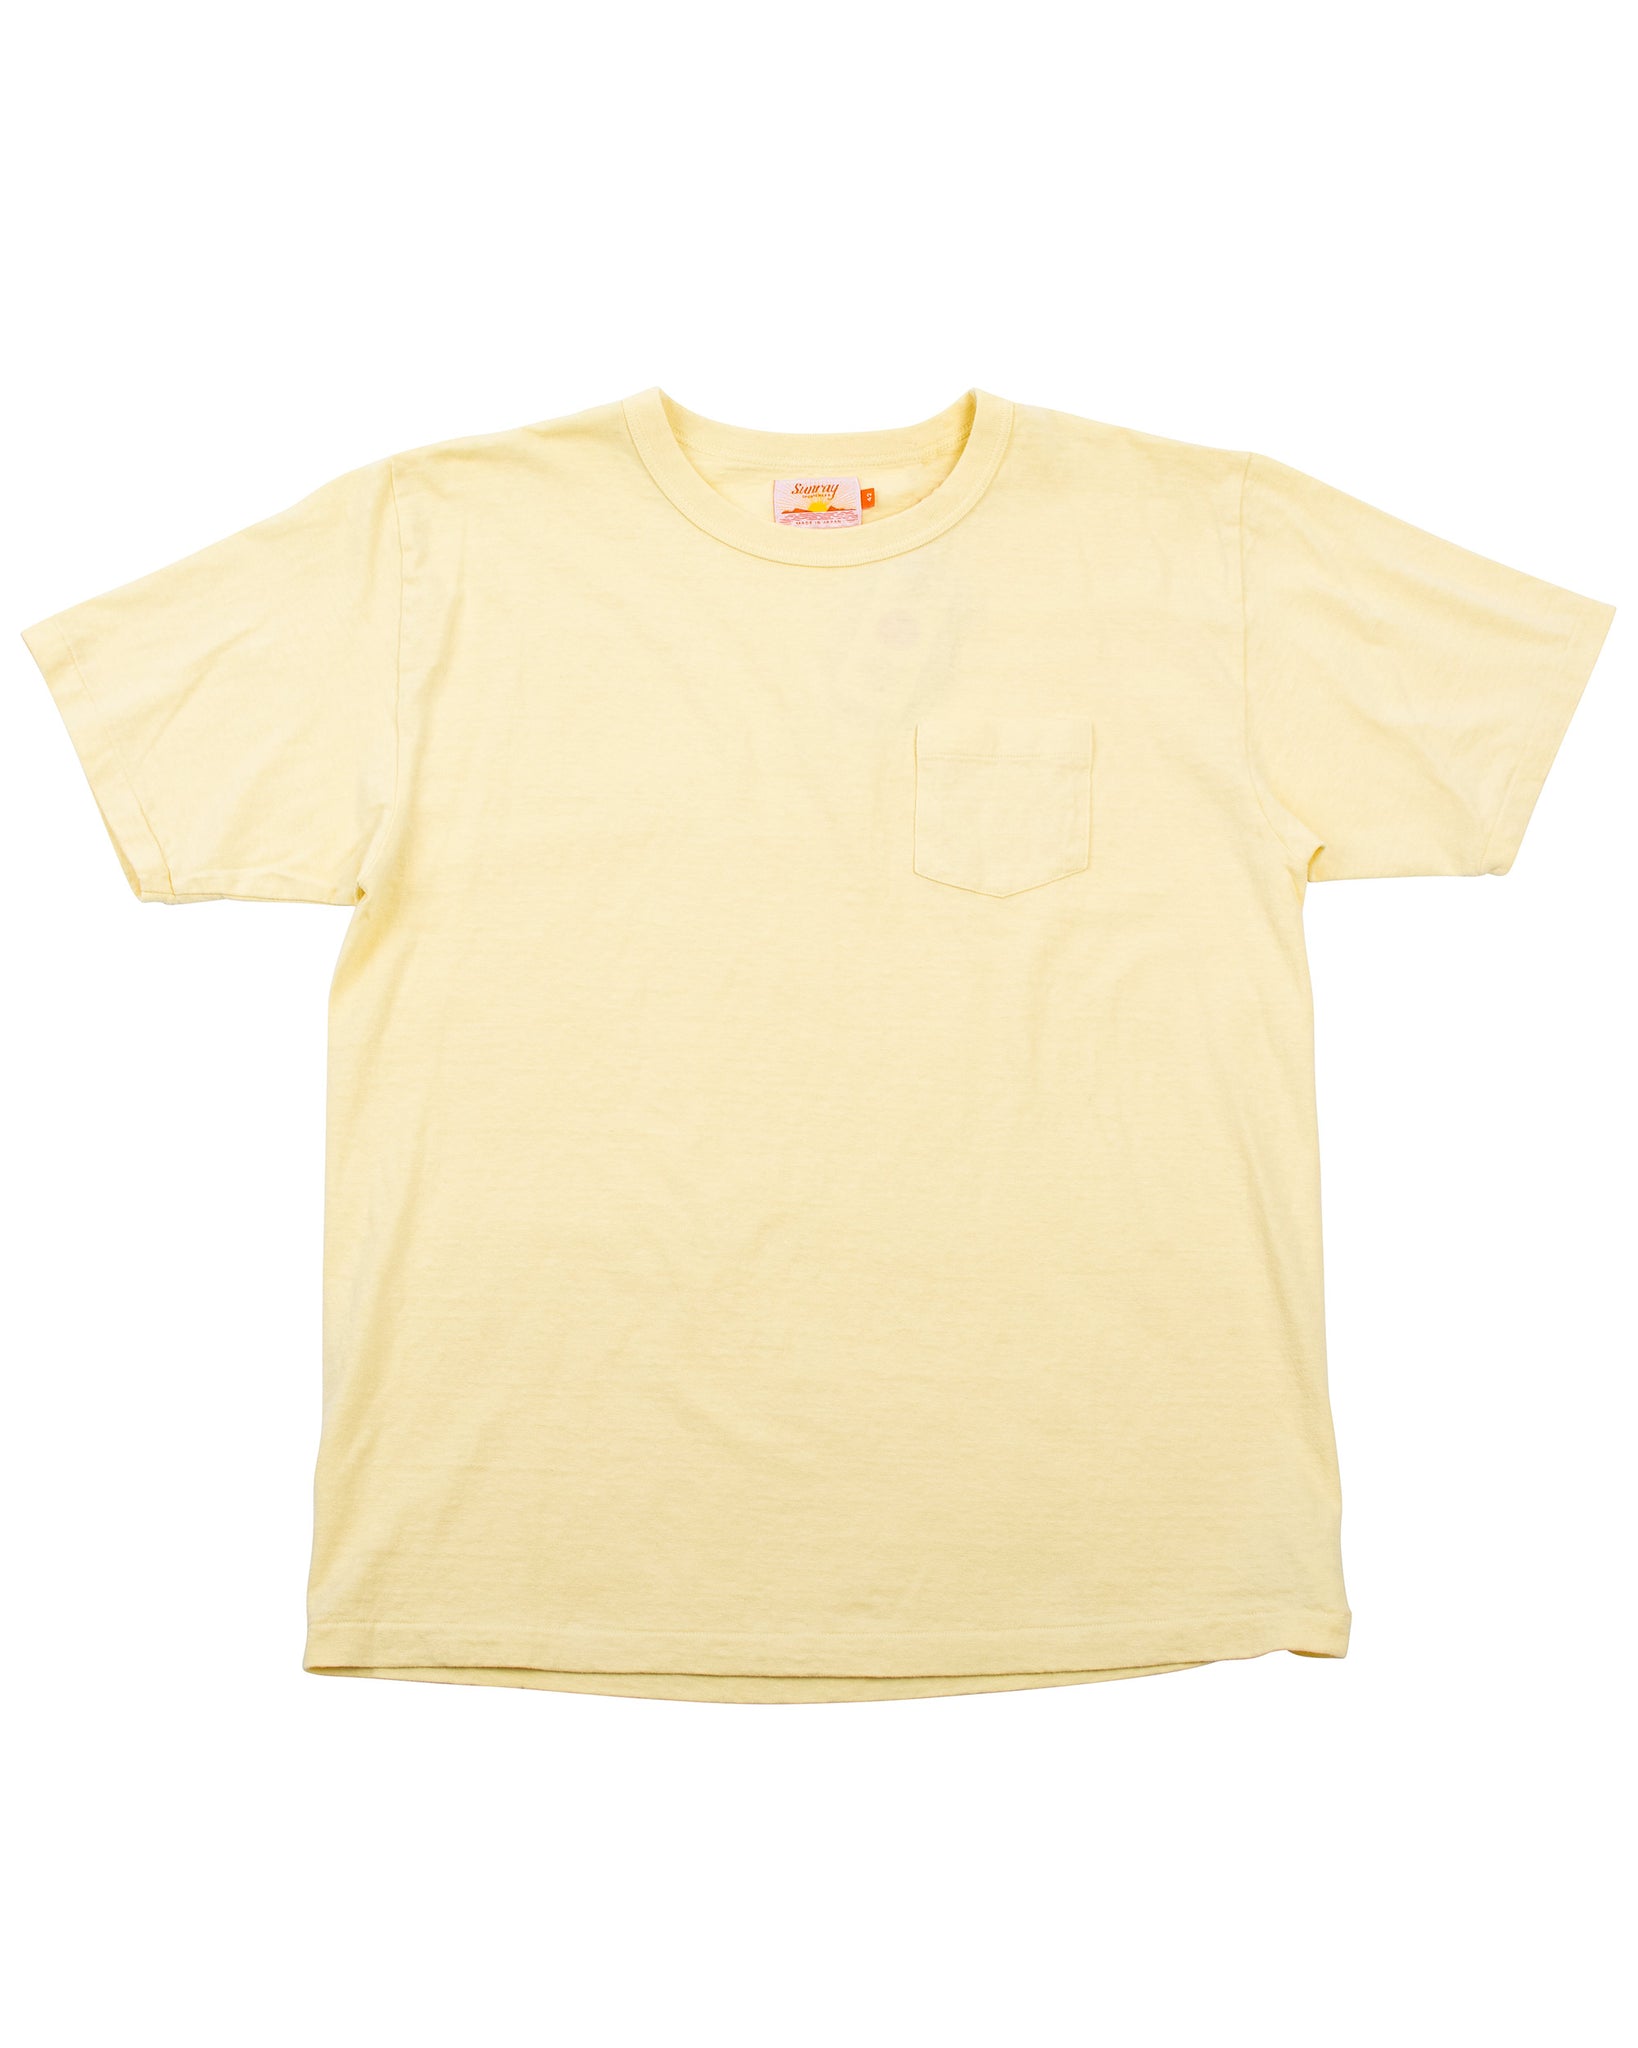 Sunray Sportswear Hanalei SS Pastel Yellow